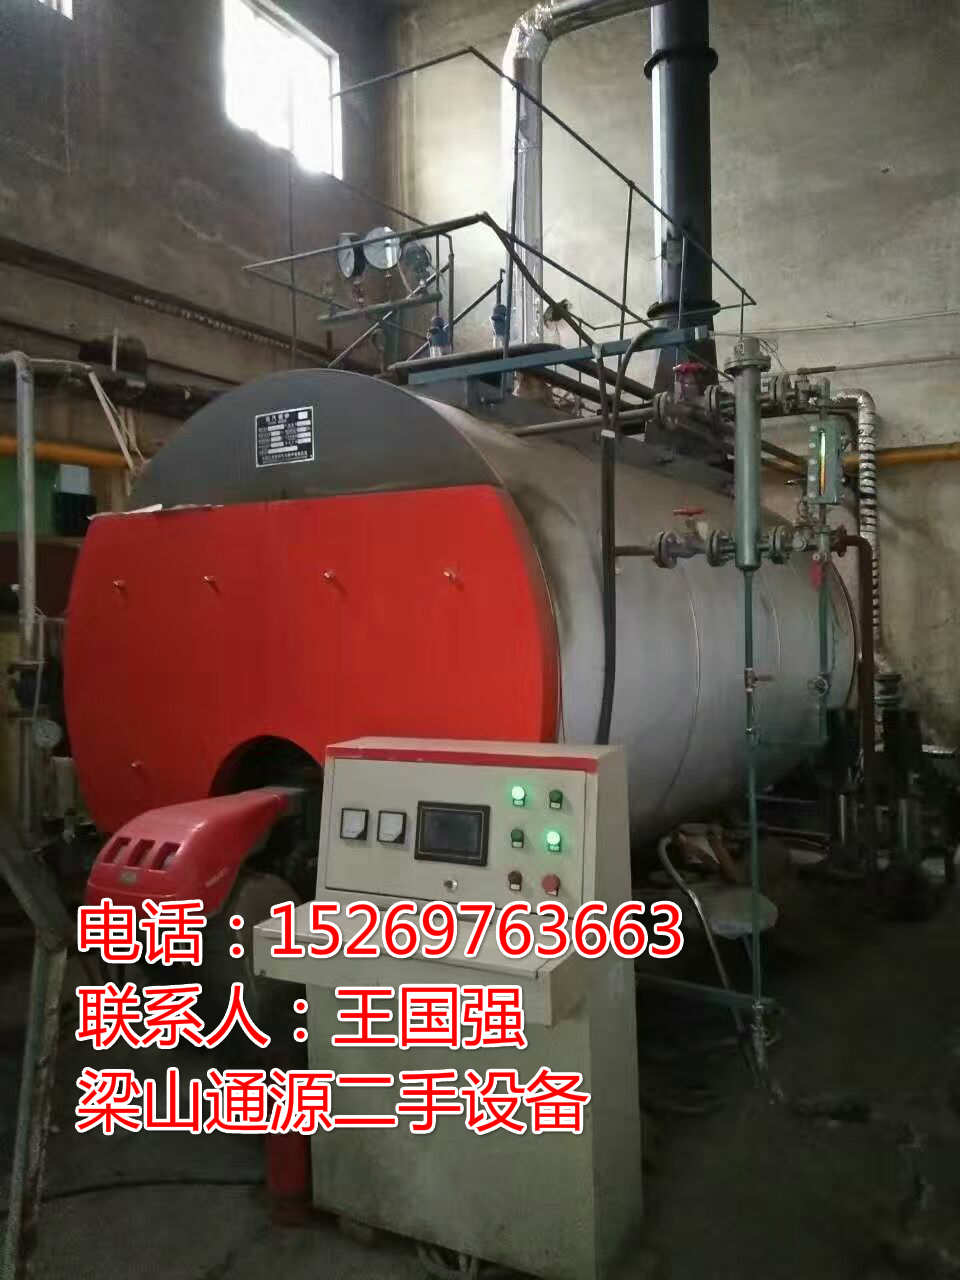 低价处理一批二手燃气蒸汽锅炉0.5吨-35吨